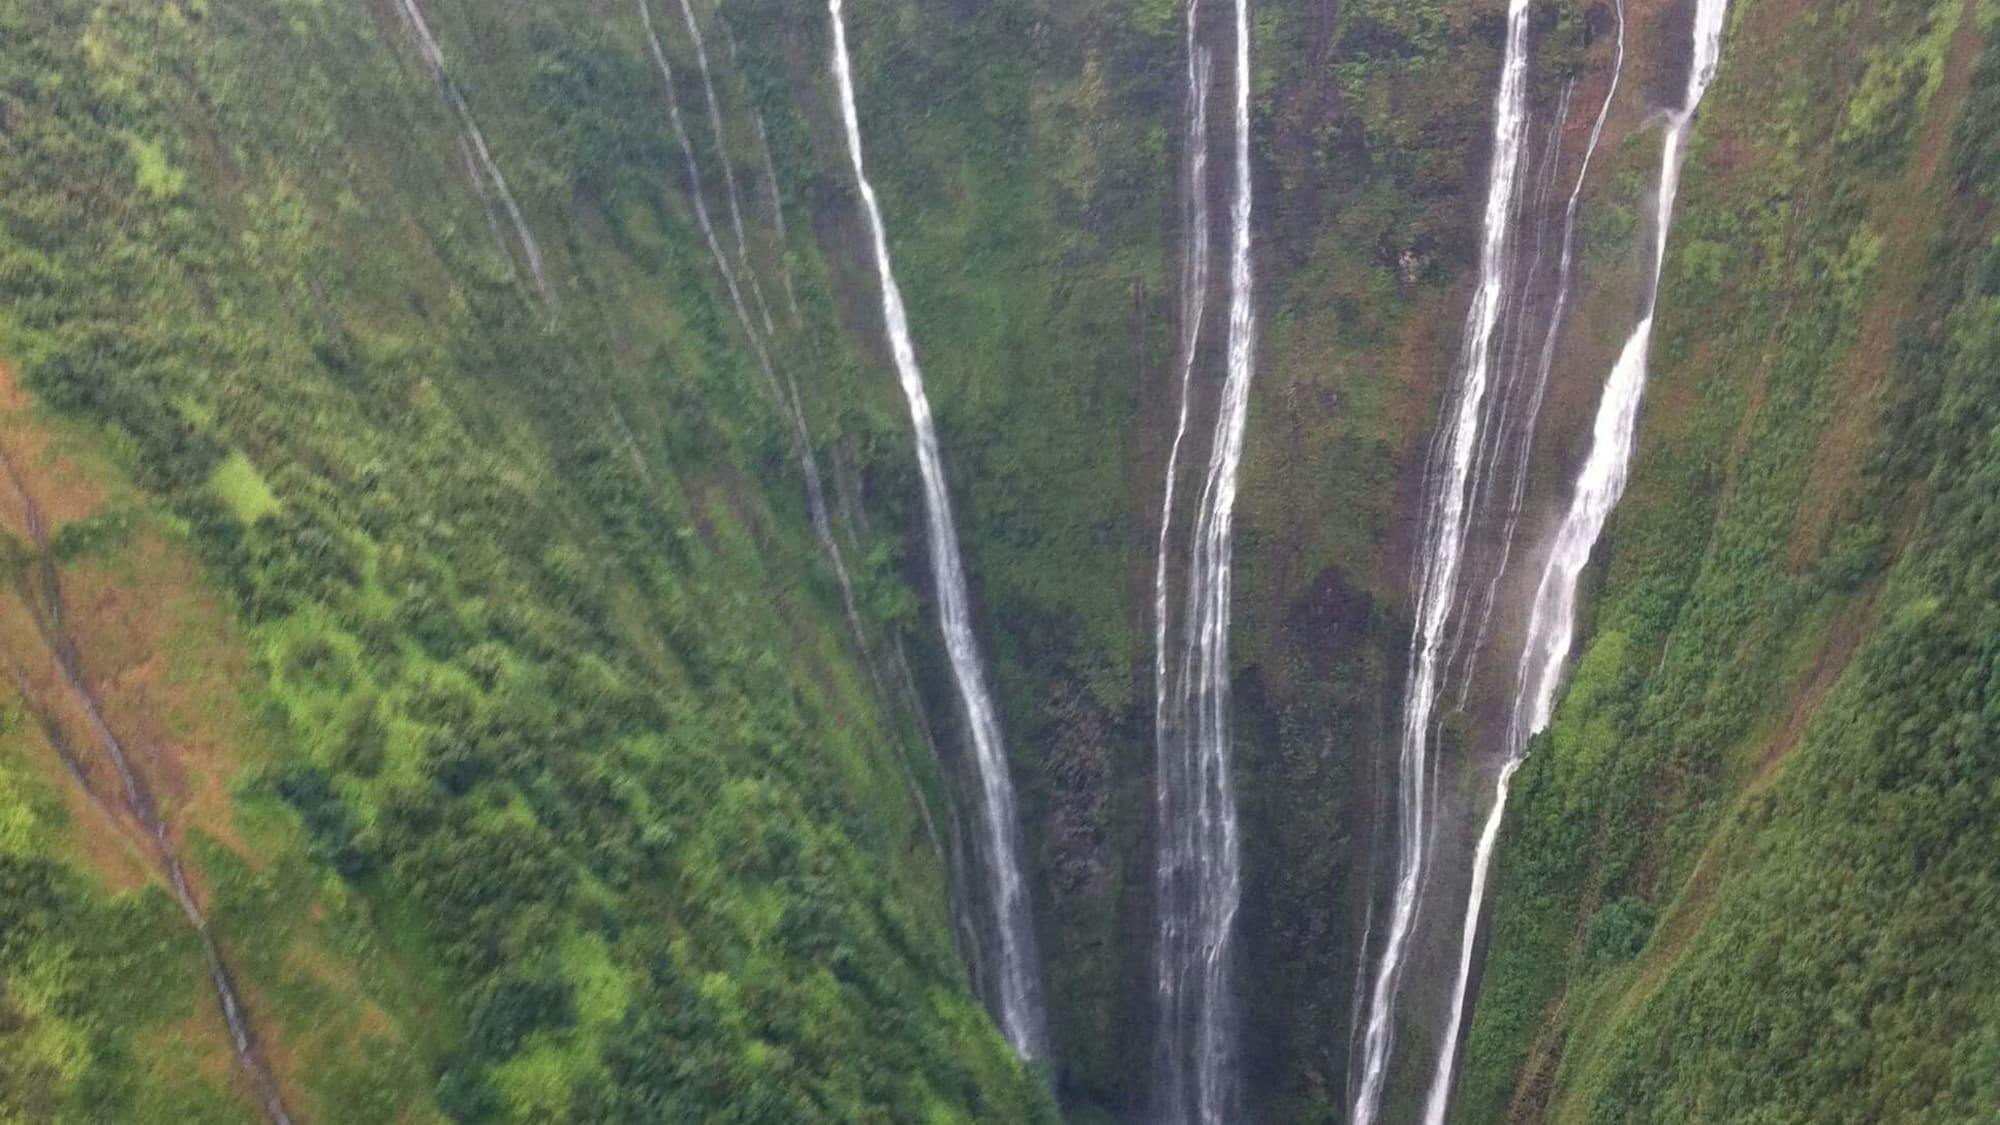 Kohala waterfalls 